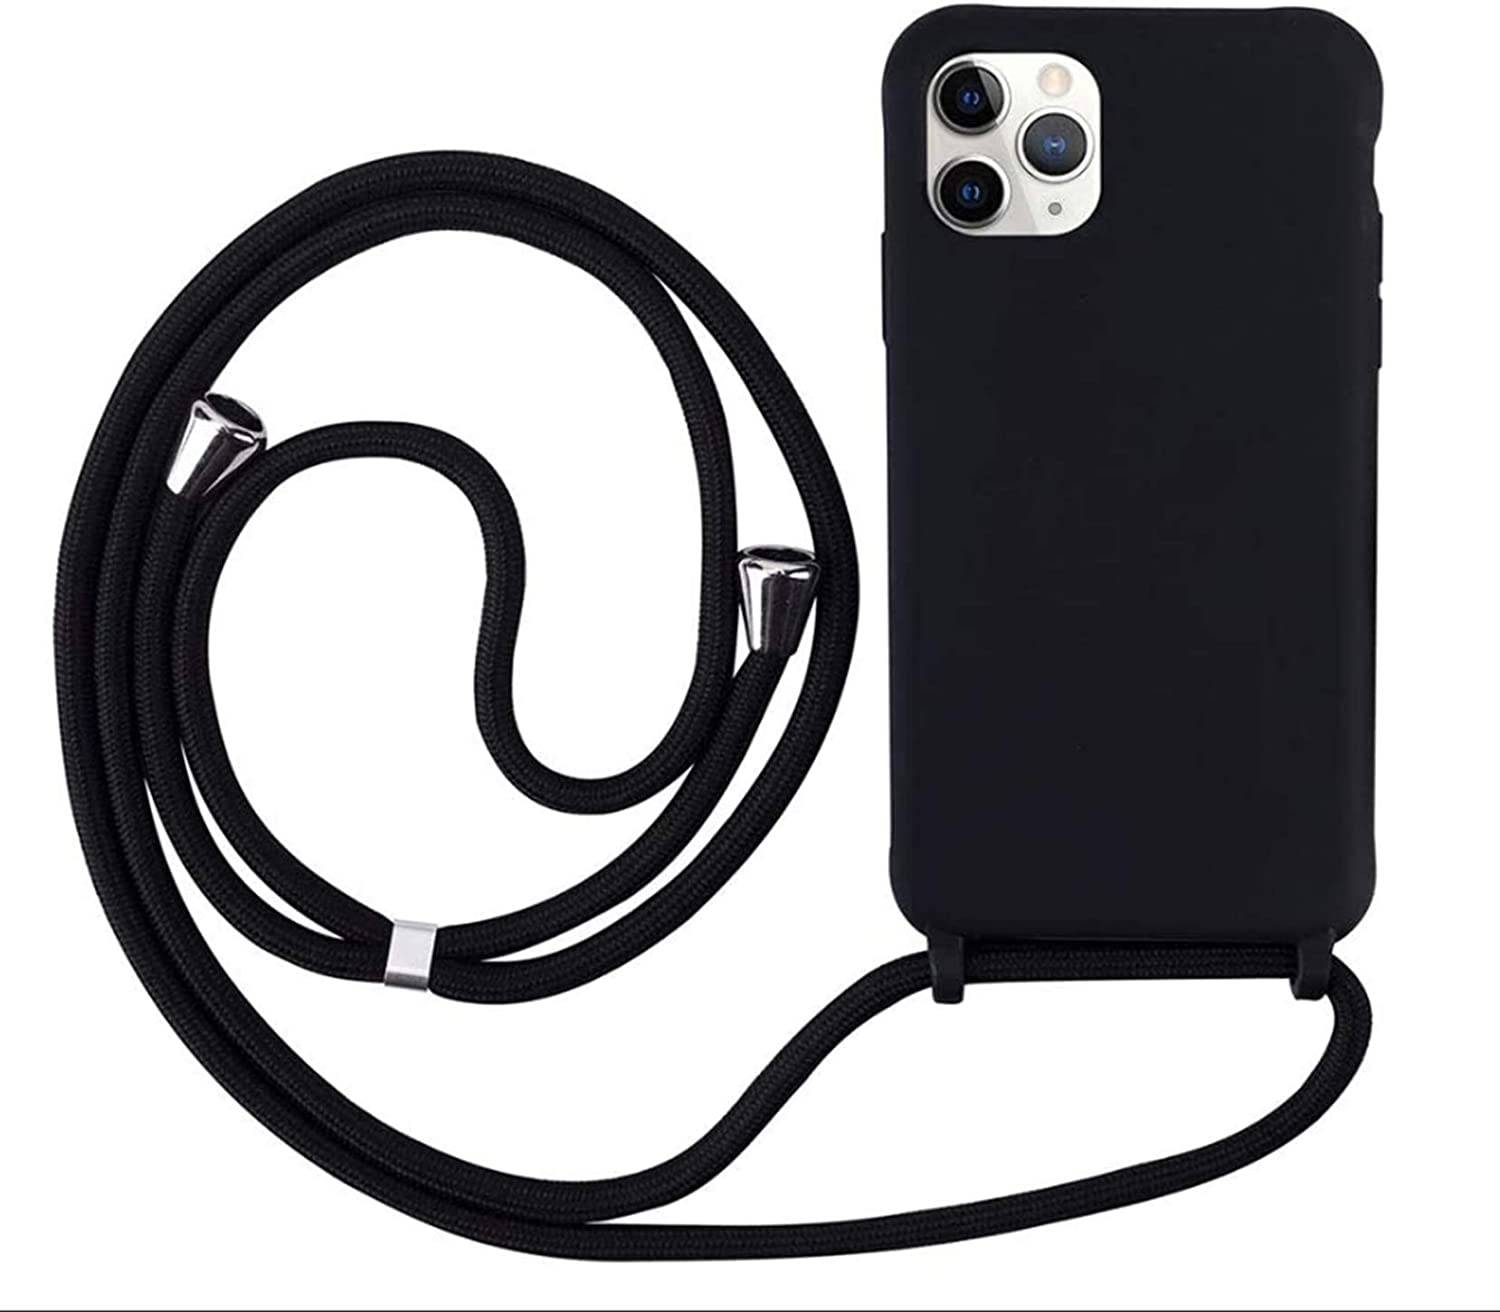 Coque avec cordon pour iPhone 11 Pro - Protection en Silicone Case - Coque tour de cou, bandoulière iPhone - Coques&Co